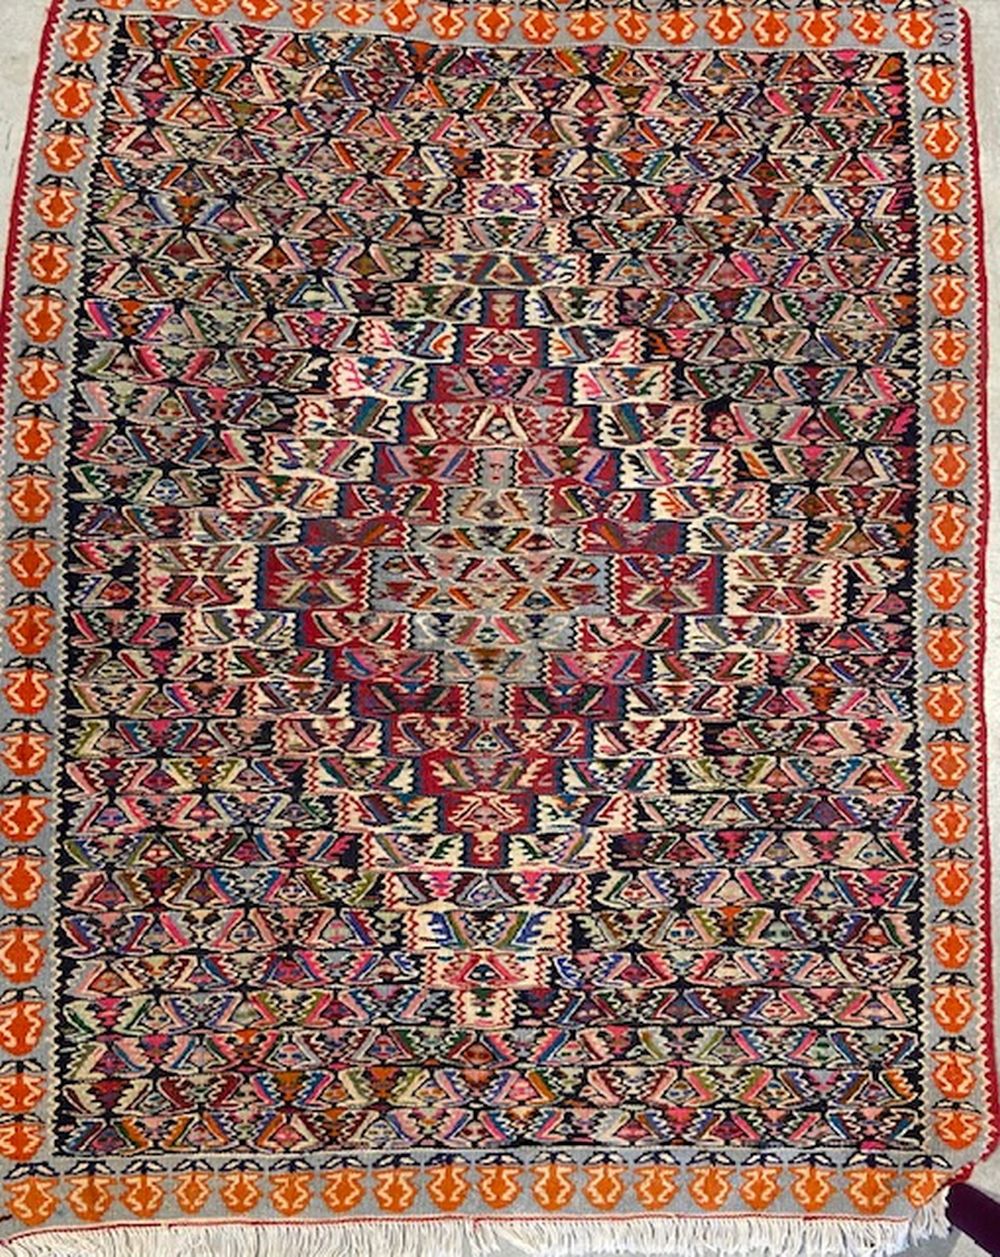 Tapis Kilim 基里姆地毯
以三色、象牙色、海军色和砖头色为背景的herati图案。
伊朗，20世纪中期
80x60厘米

一块基里姆地毯
有关该拍品的&hellip;